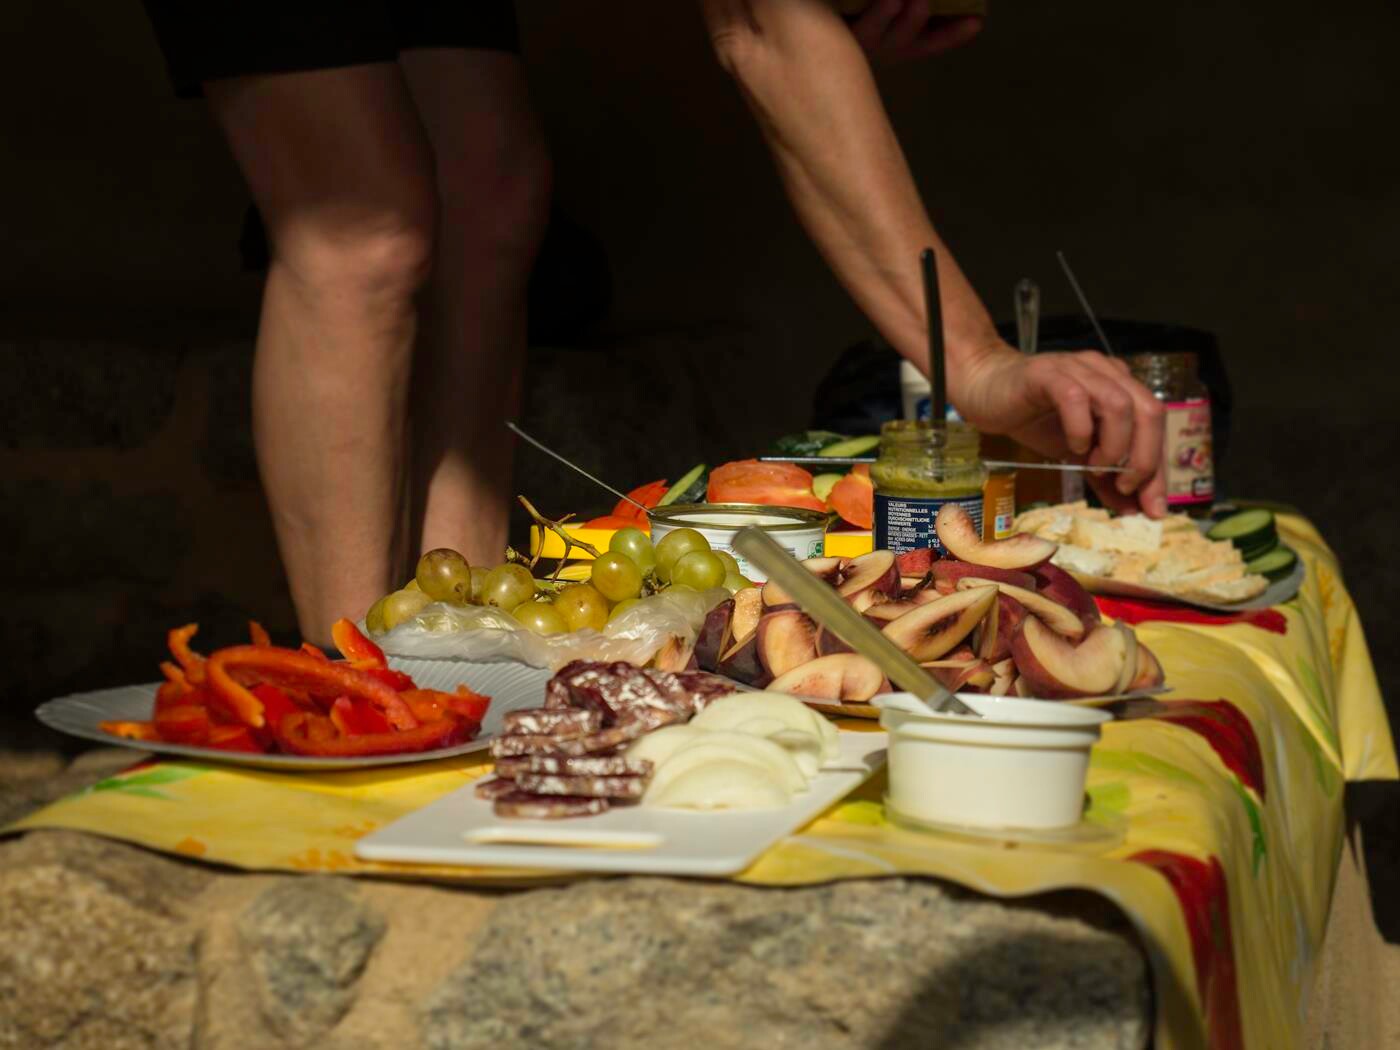 Korsikansk mad; salami, ost, peberfrugt, vindruer og andet frugt og grønt.